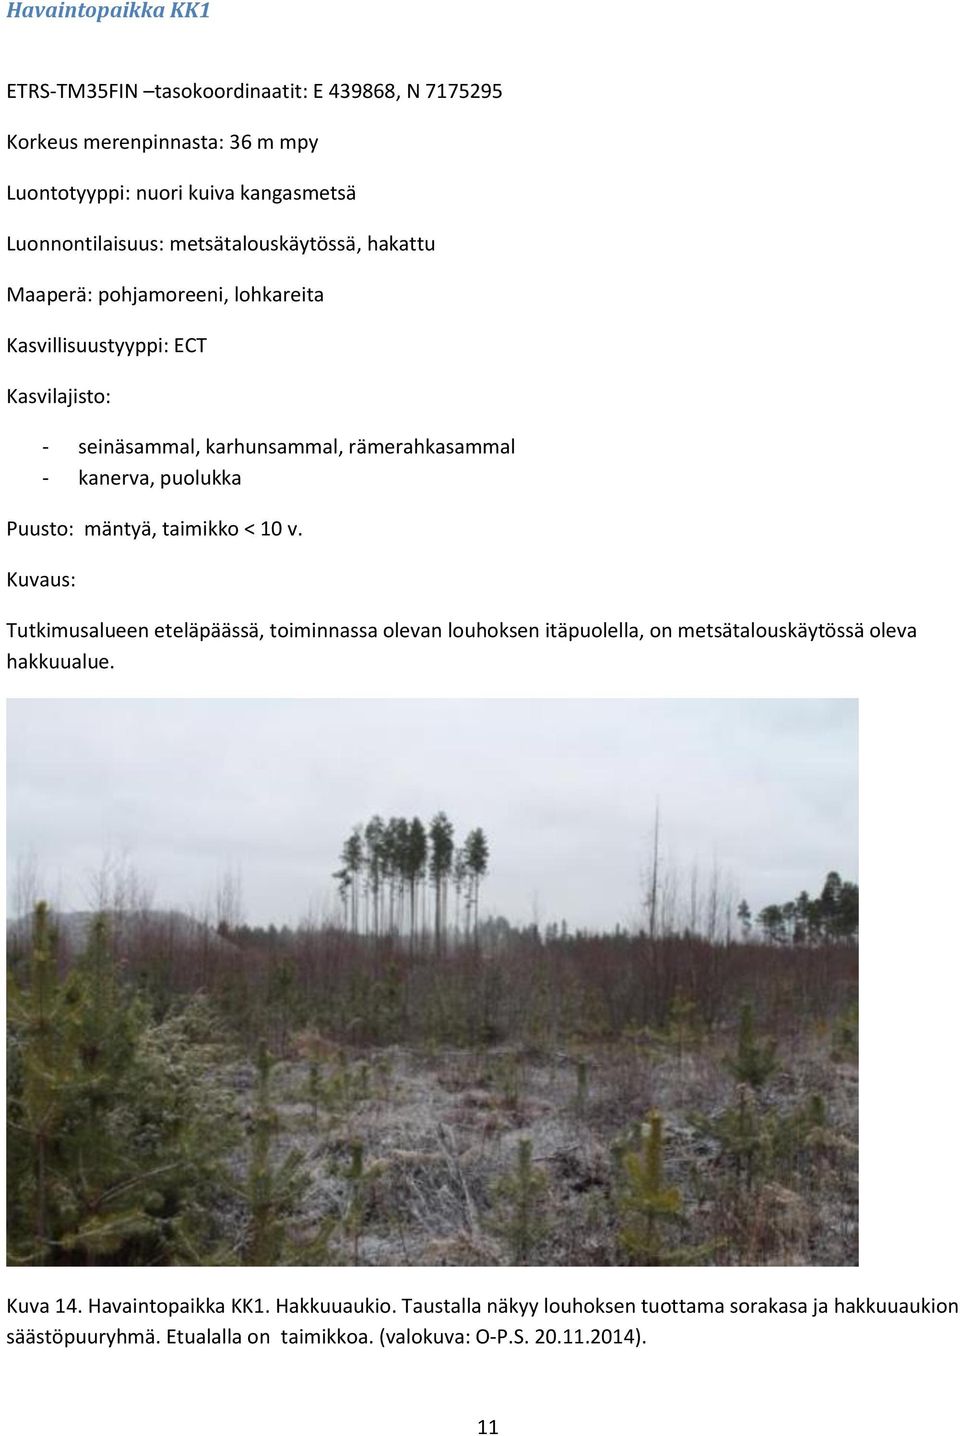 puolukka Puusto: mäntyä, taimikko < 10 v. Kuvaus: Tutkimusalueen eteläpäässä, toiminnassa olevan louhoksen itäpuolella, on metsätalouskäytössä oleva hakkuualue.